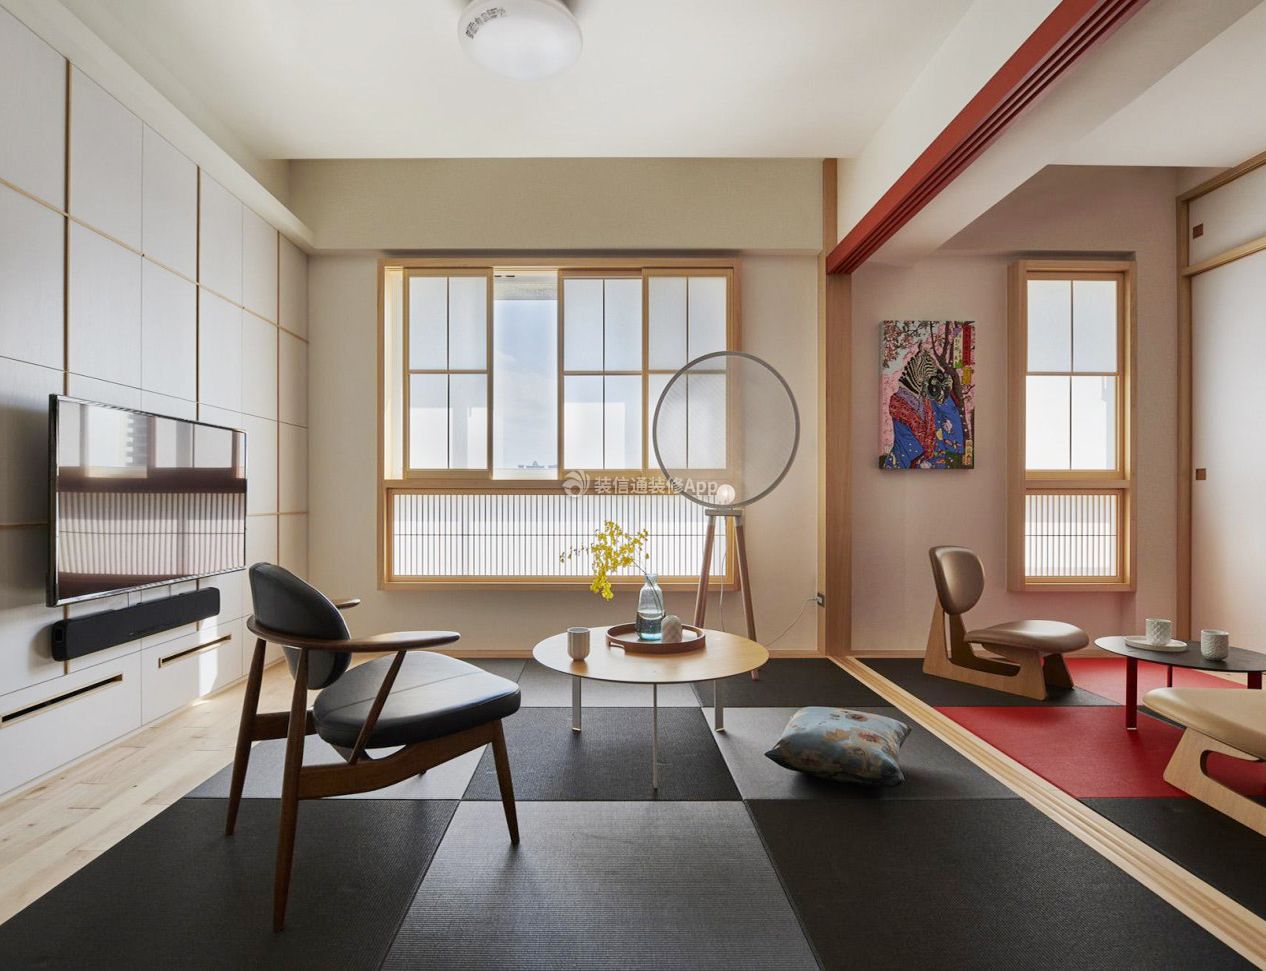 日式风格房屋客厅装修设计效果图